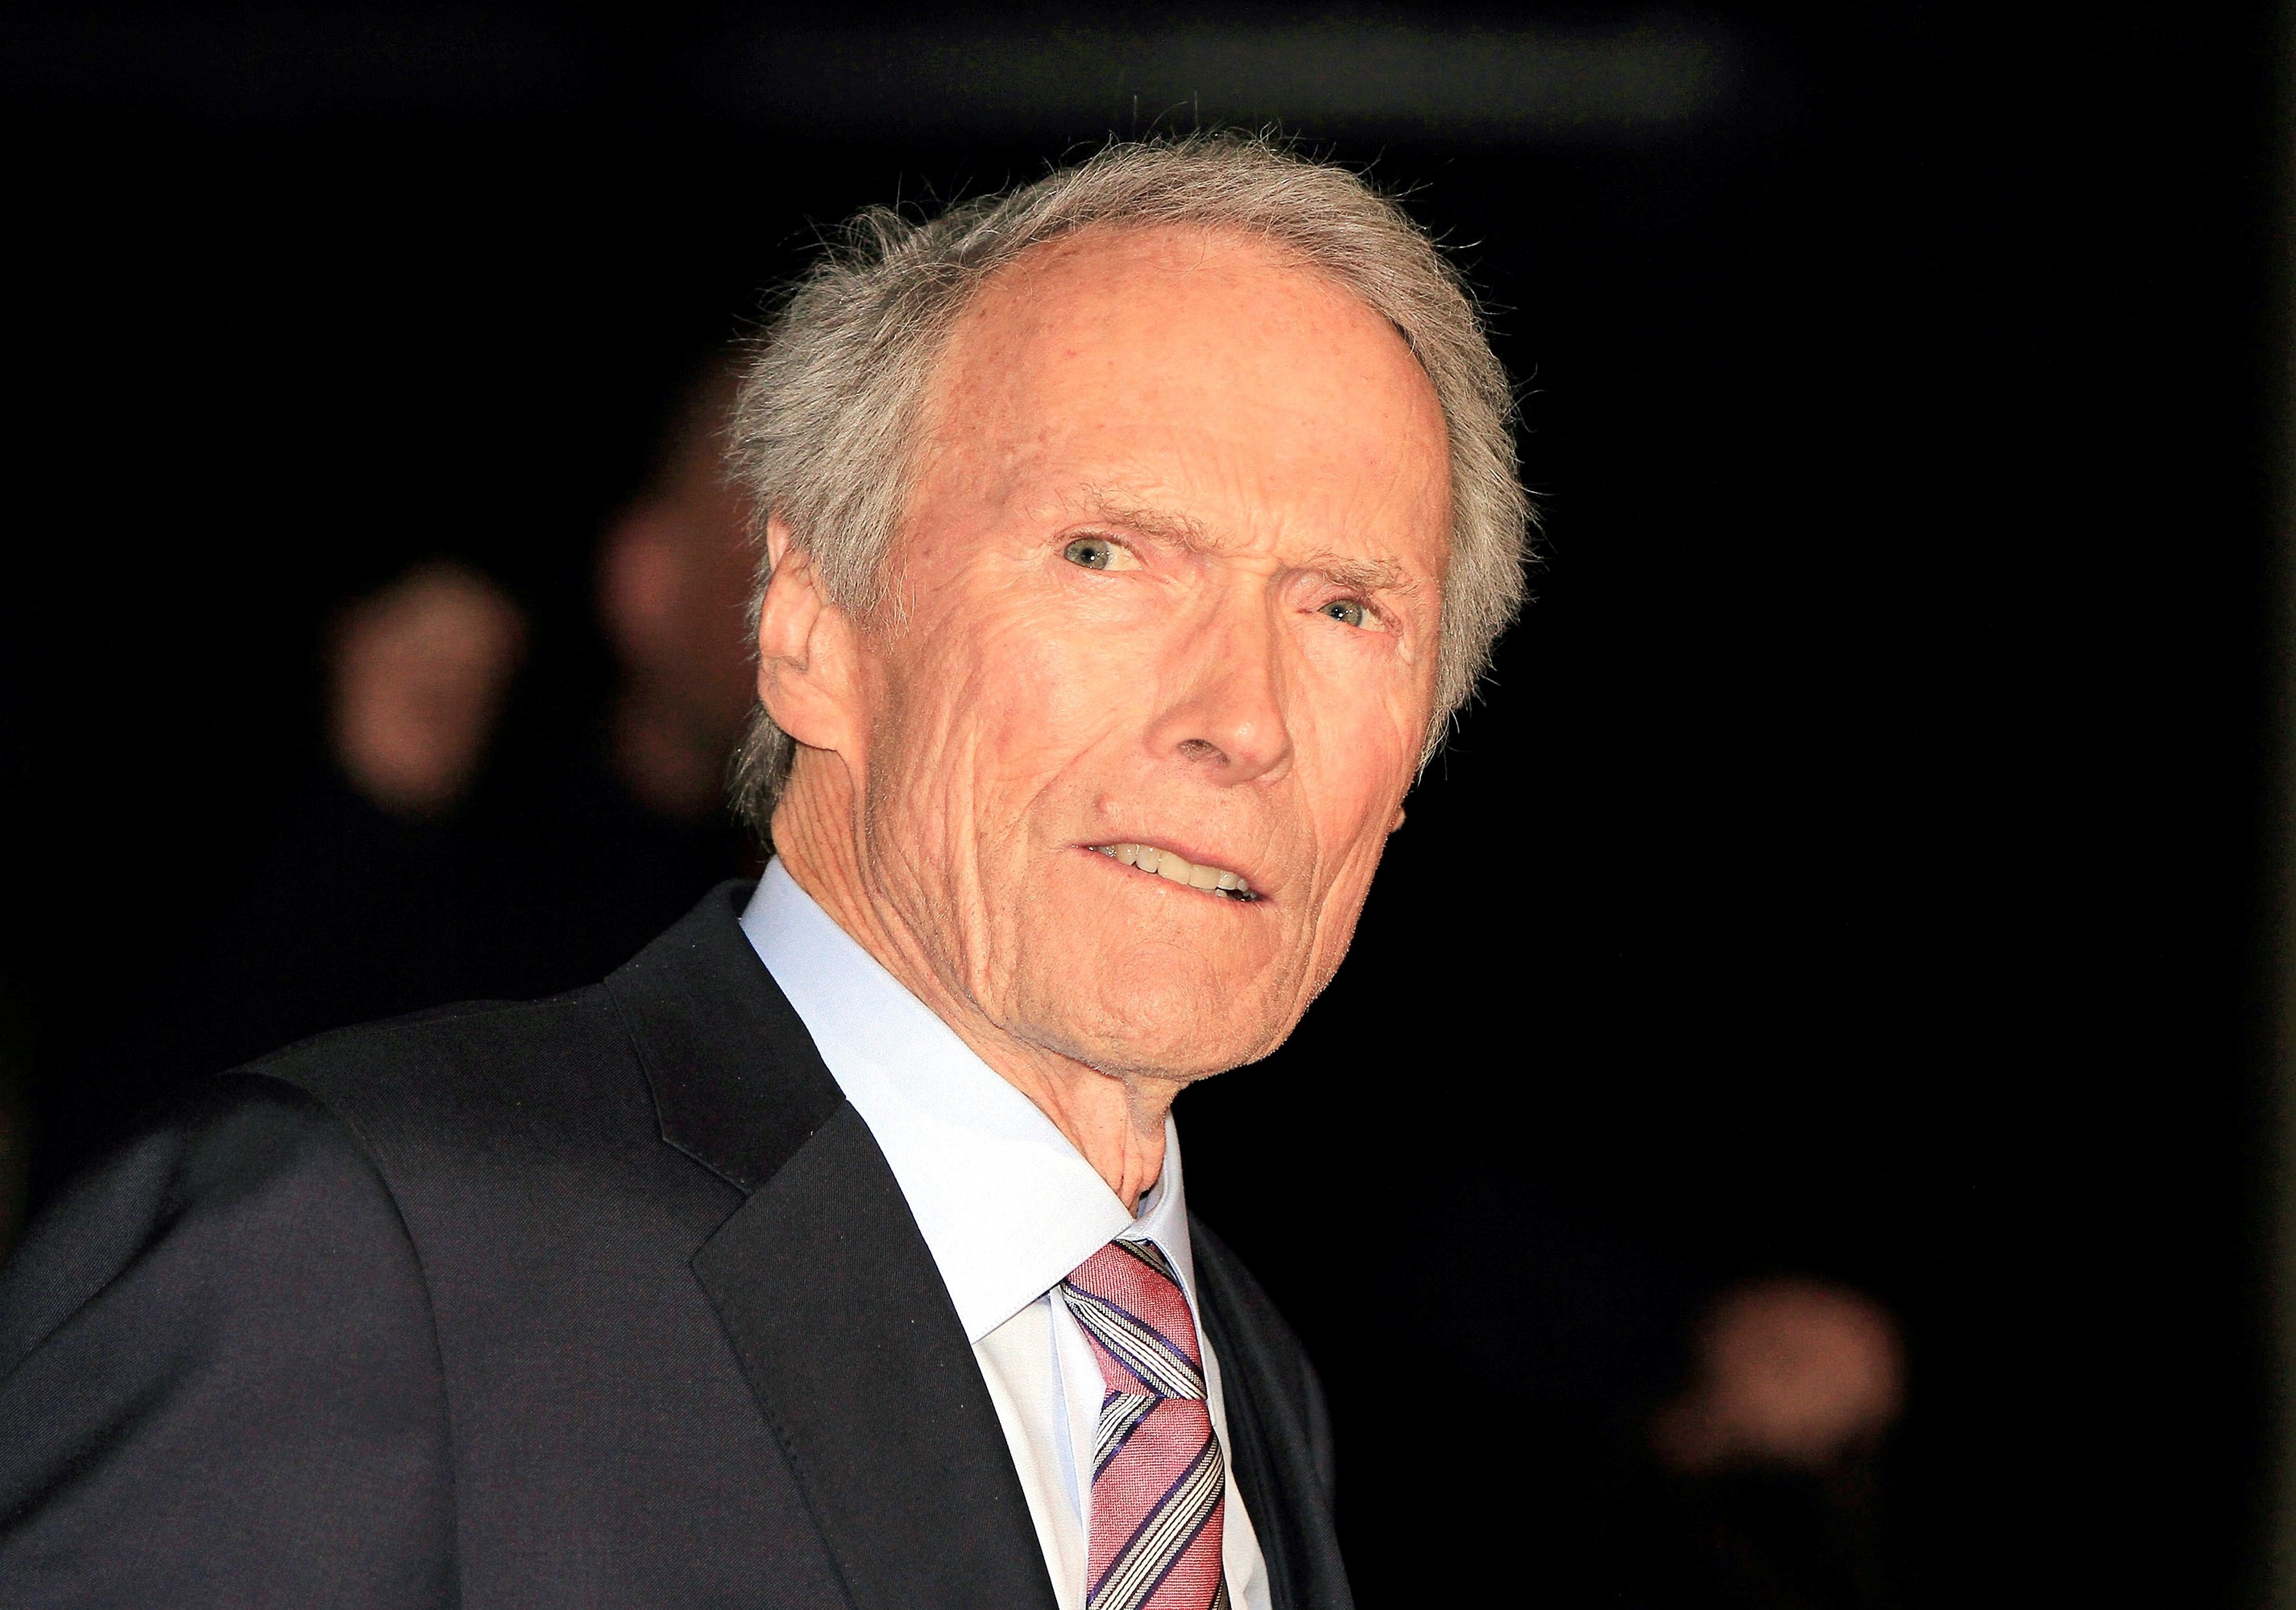 Sobrevivió a un accidente aéreo, fue alcalde de su ciudad y nunca fumó: la vida de Clint Eastwood, más allá de sus 112 películas